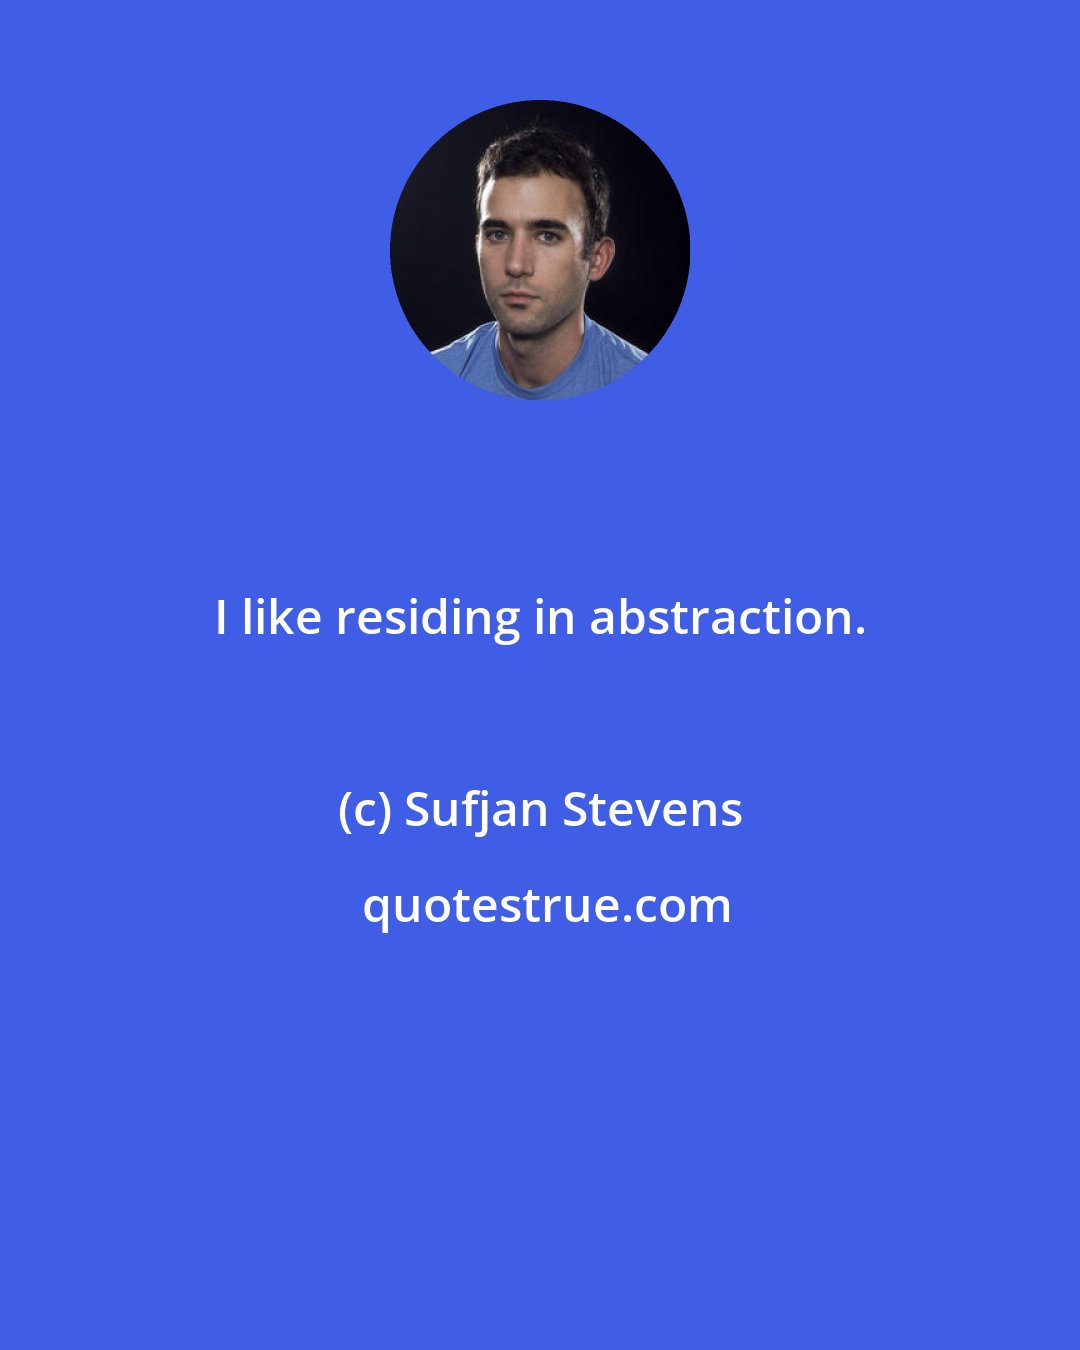 Sufjan Stevens: I like residing in abstraction.